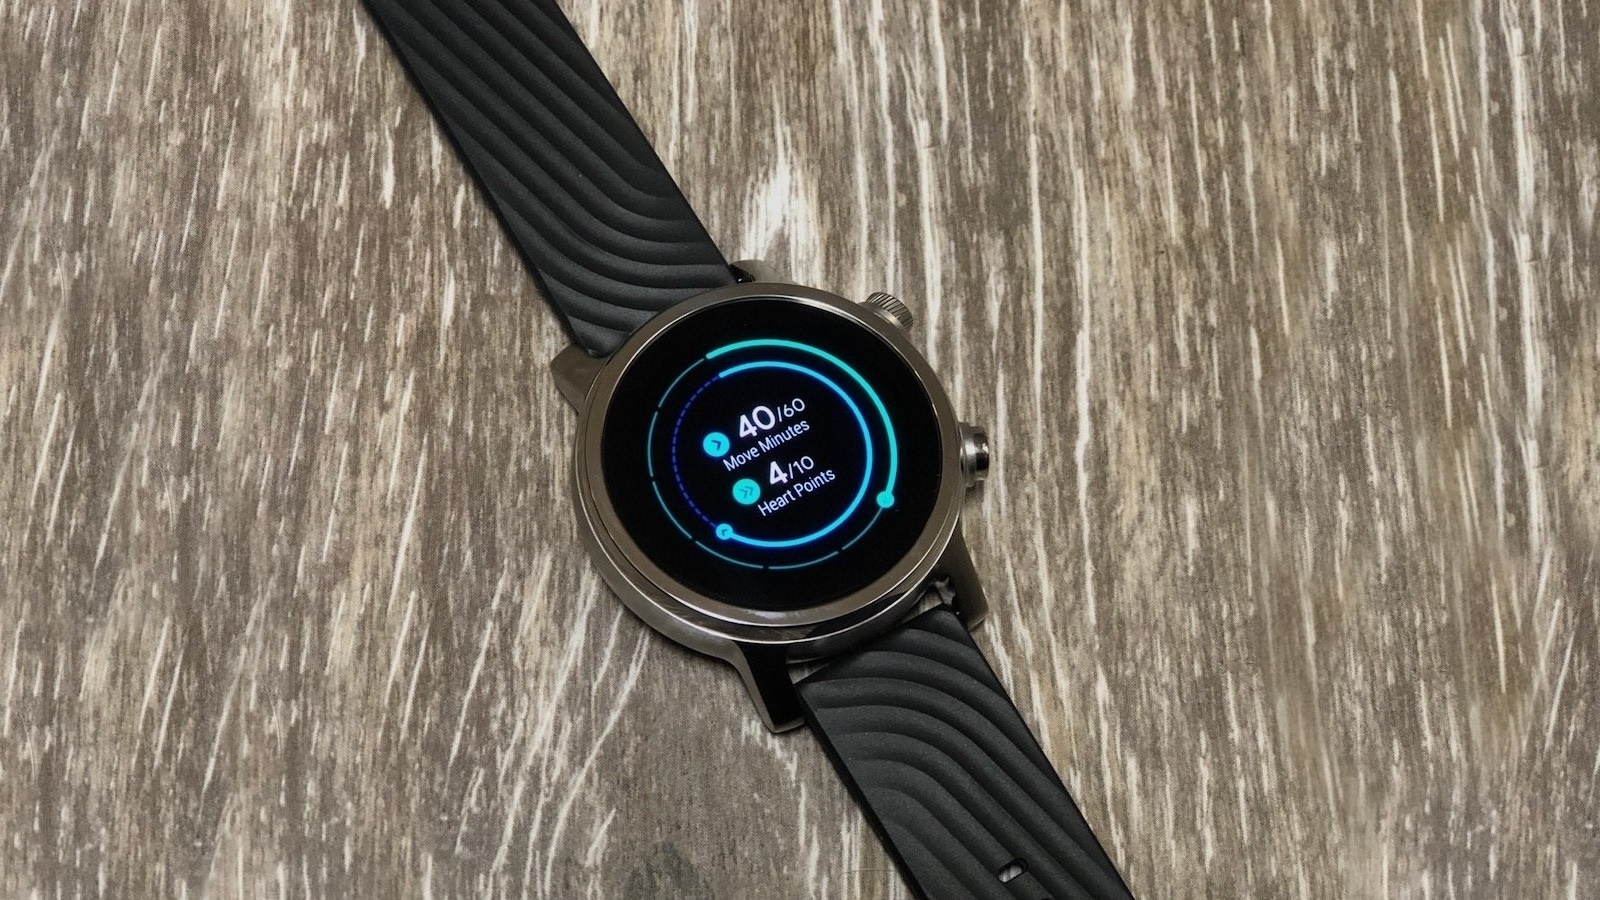 Moto 360 (3rd generation, 2020) Wear OS smartwatch